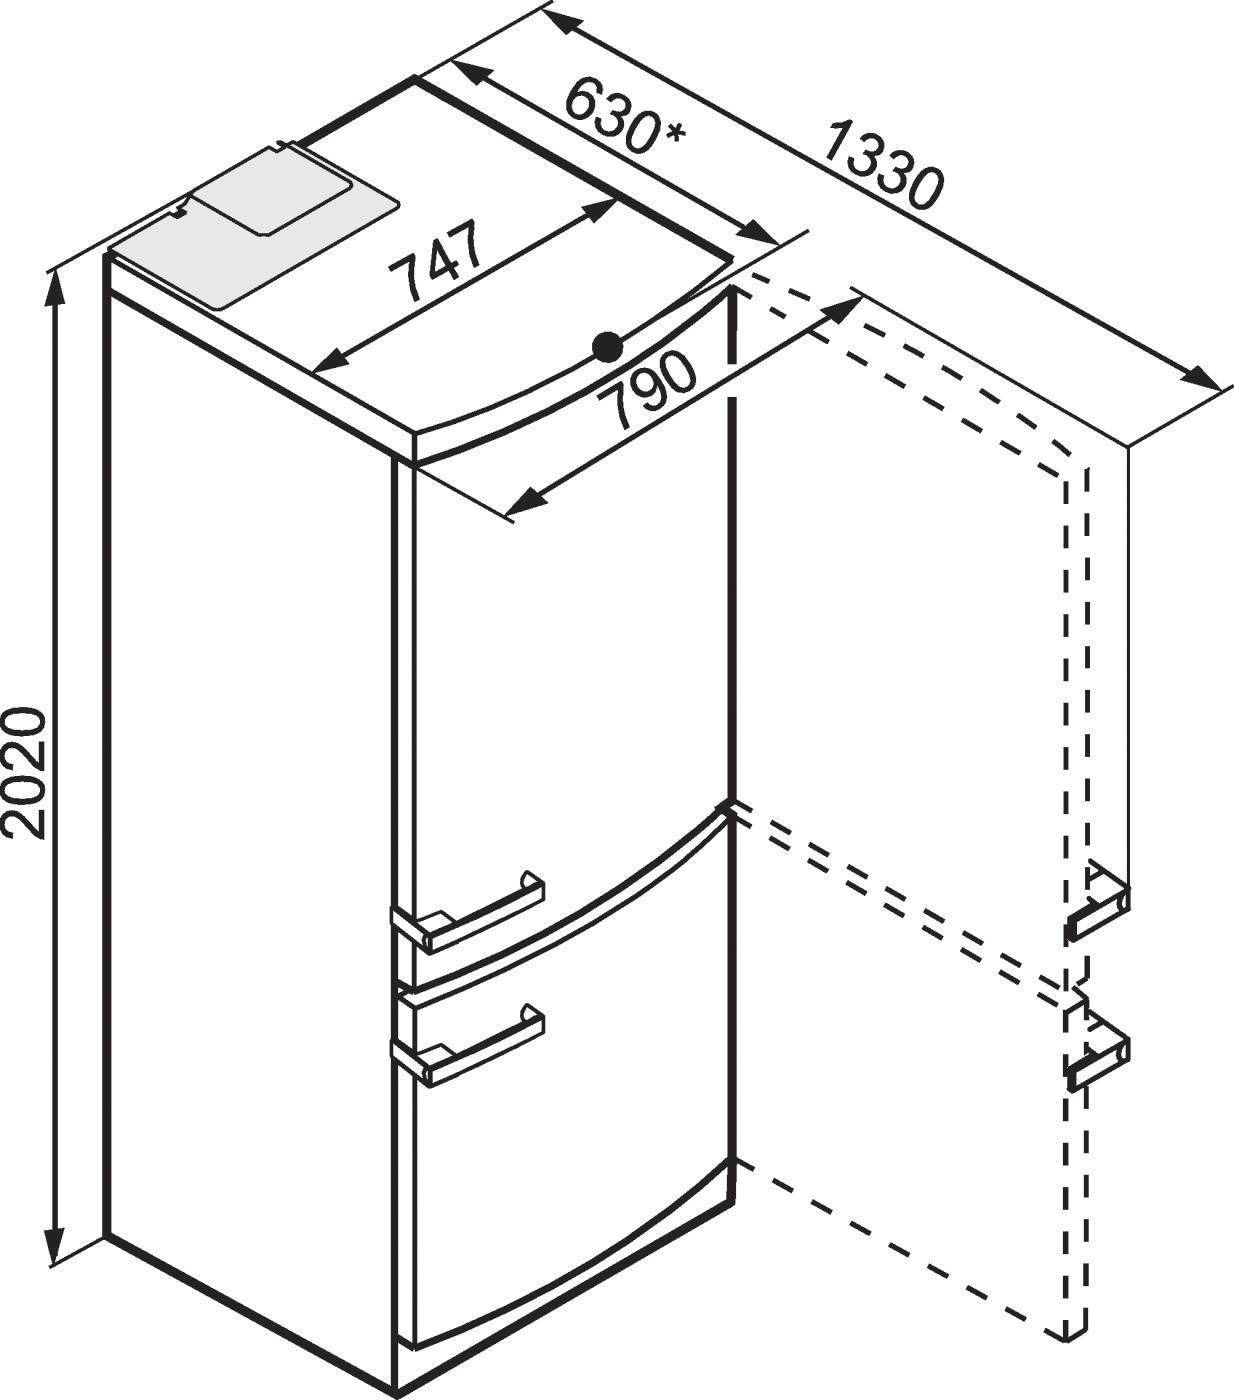 Габариты бытового холодильника: стандартная ширина, высота и глубина холодильника